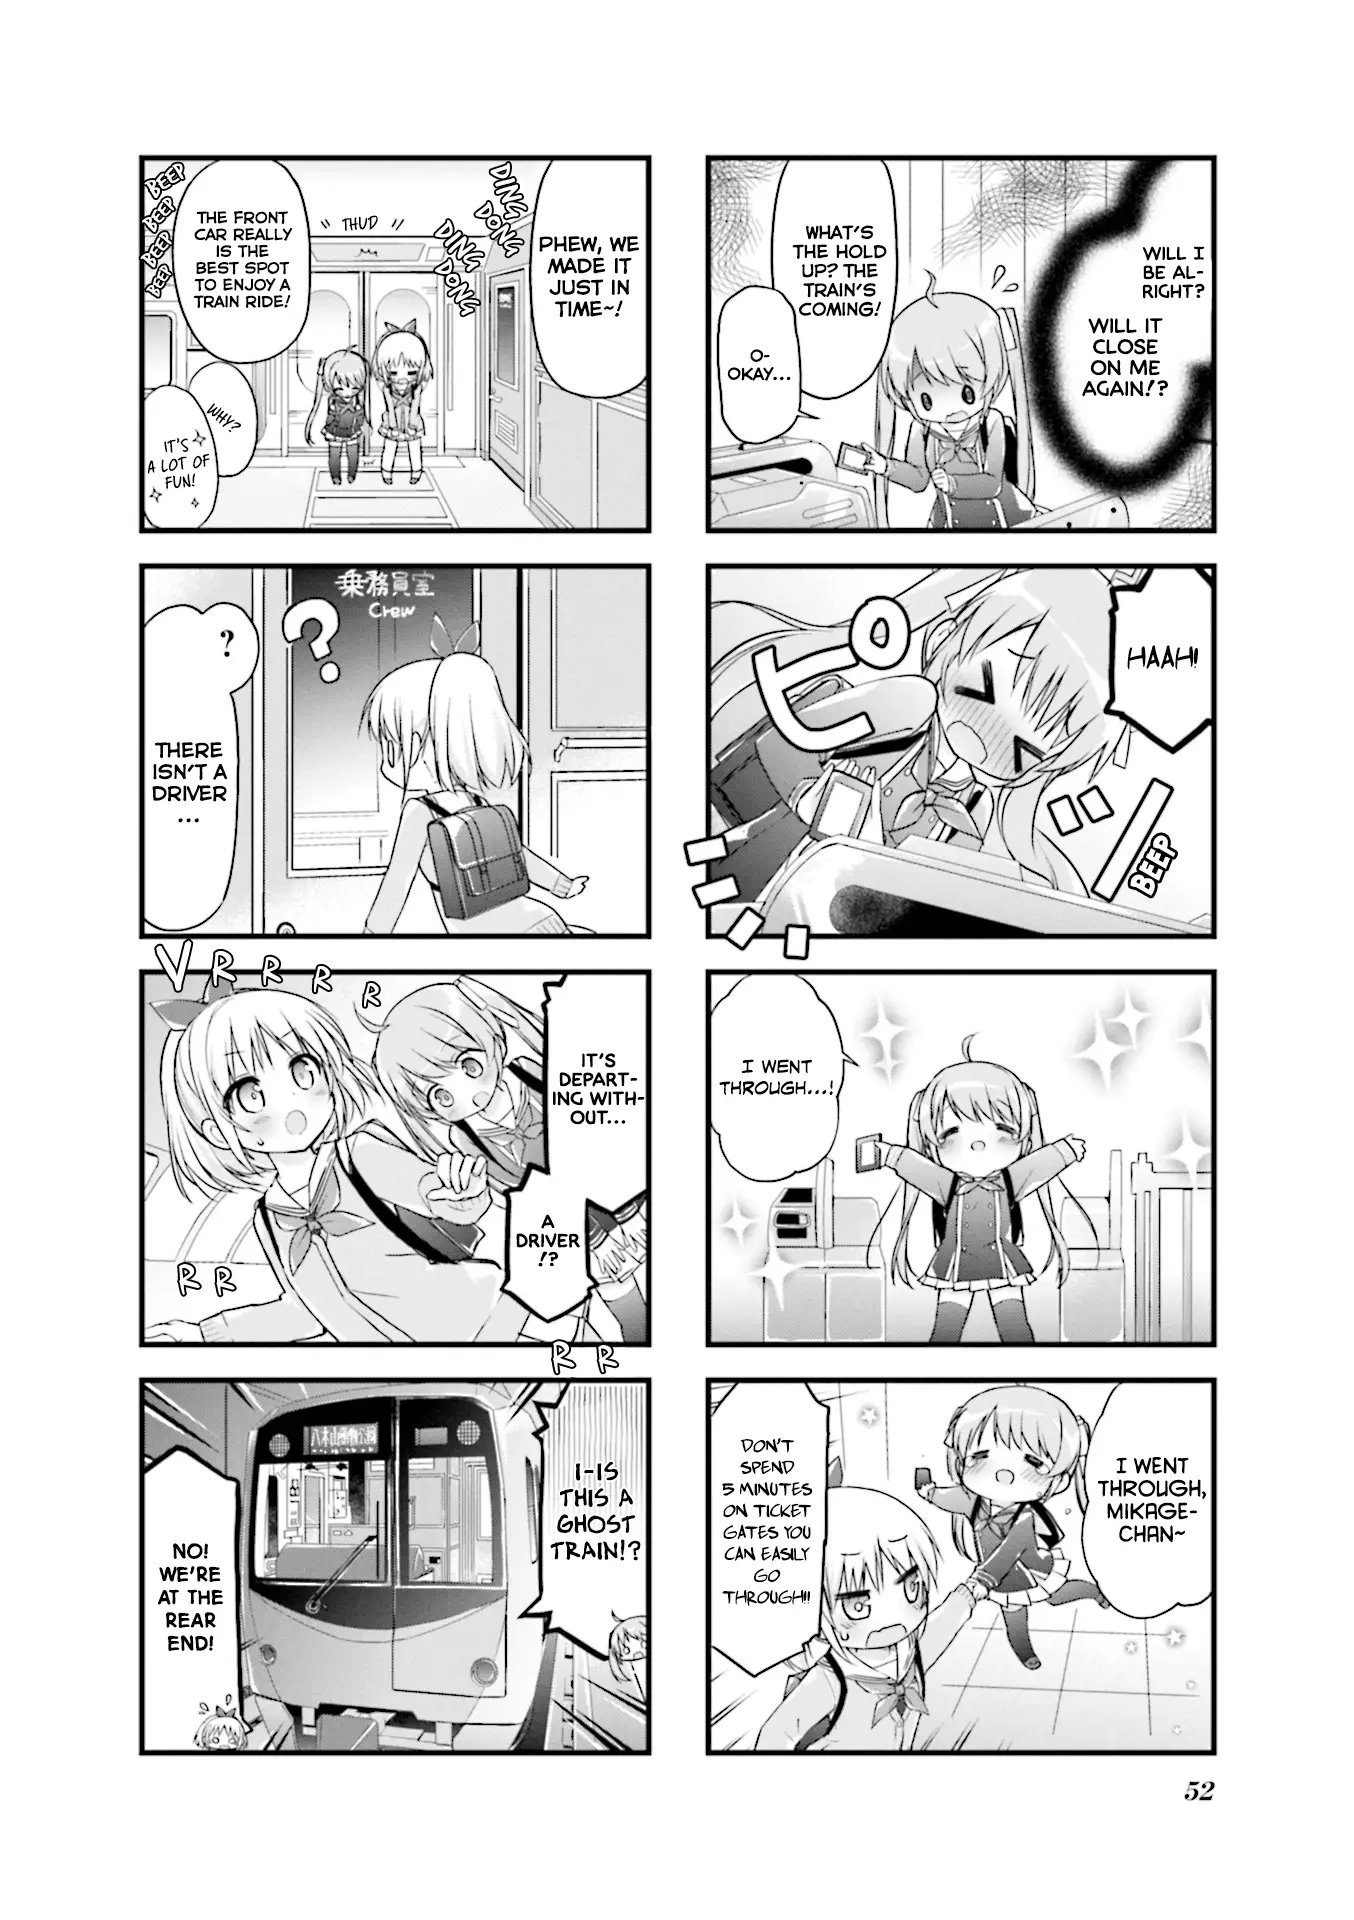 Hatsukoi*rail Trip - 6 page 4